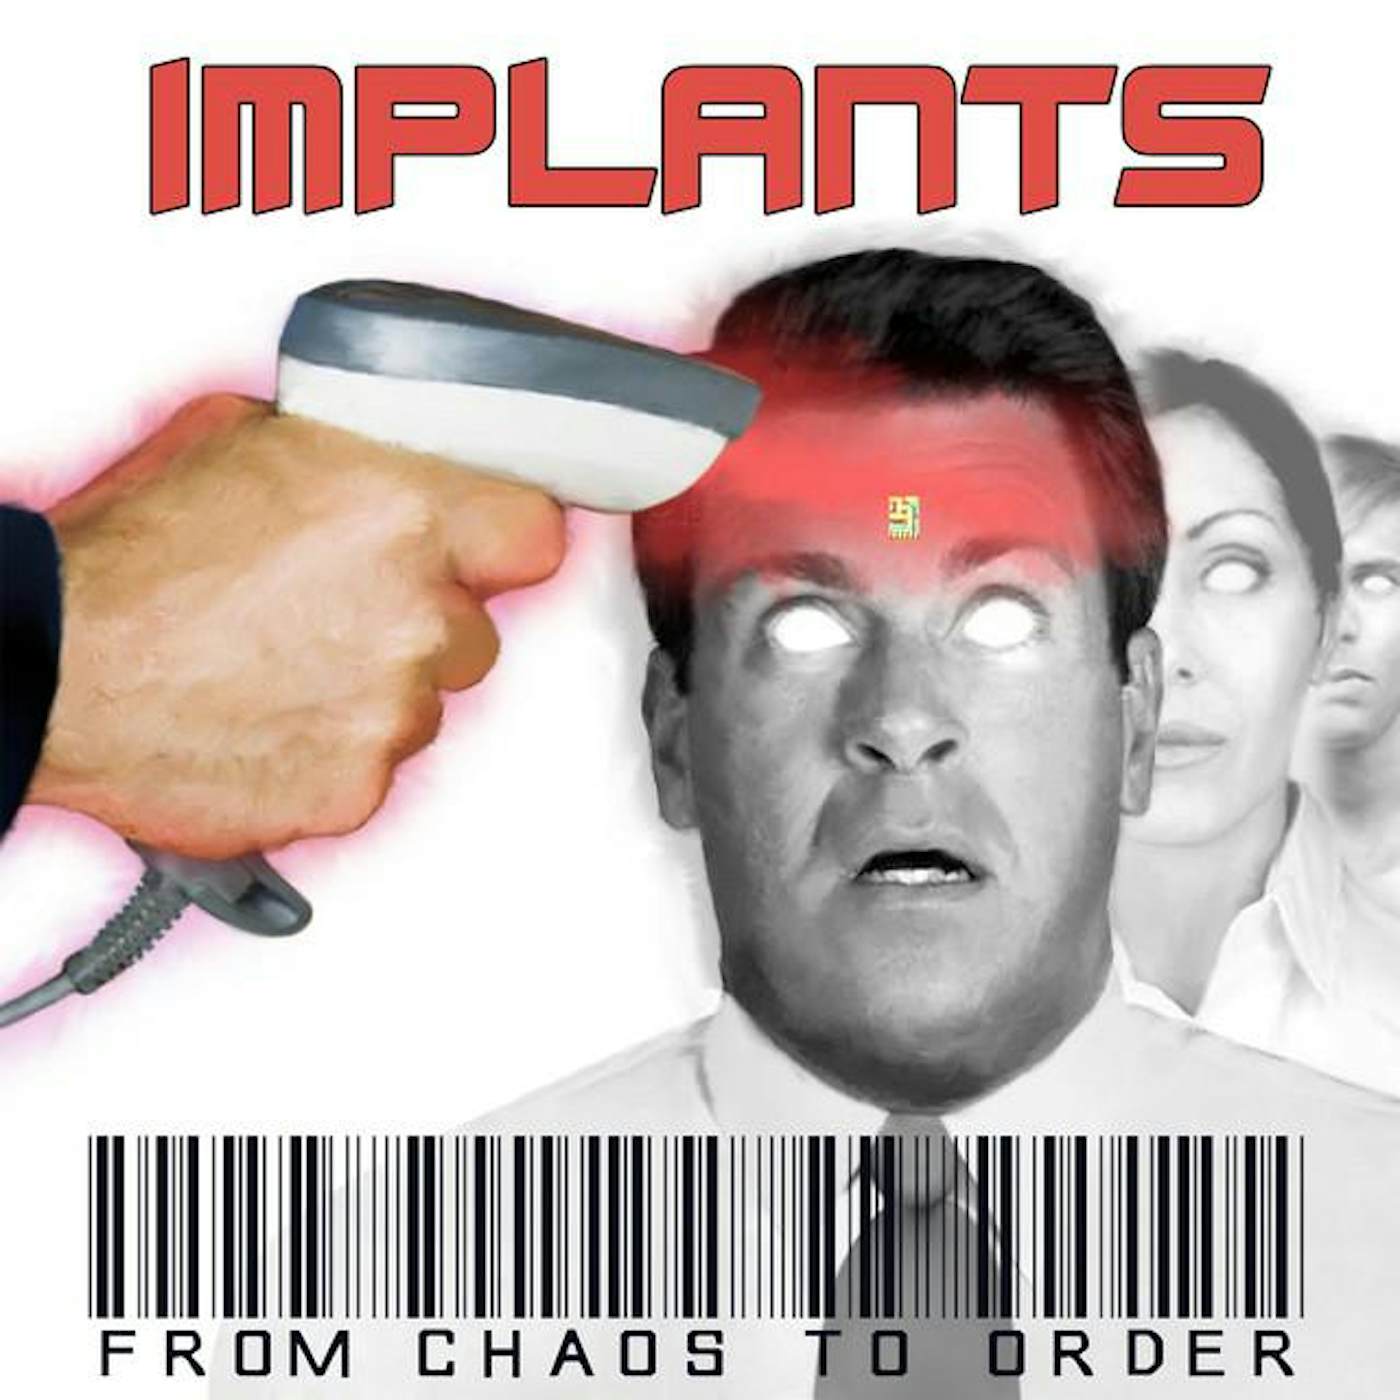 The Implants